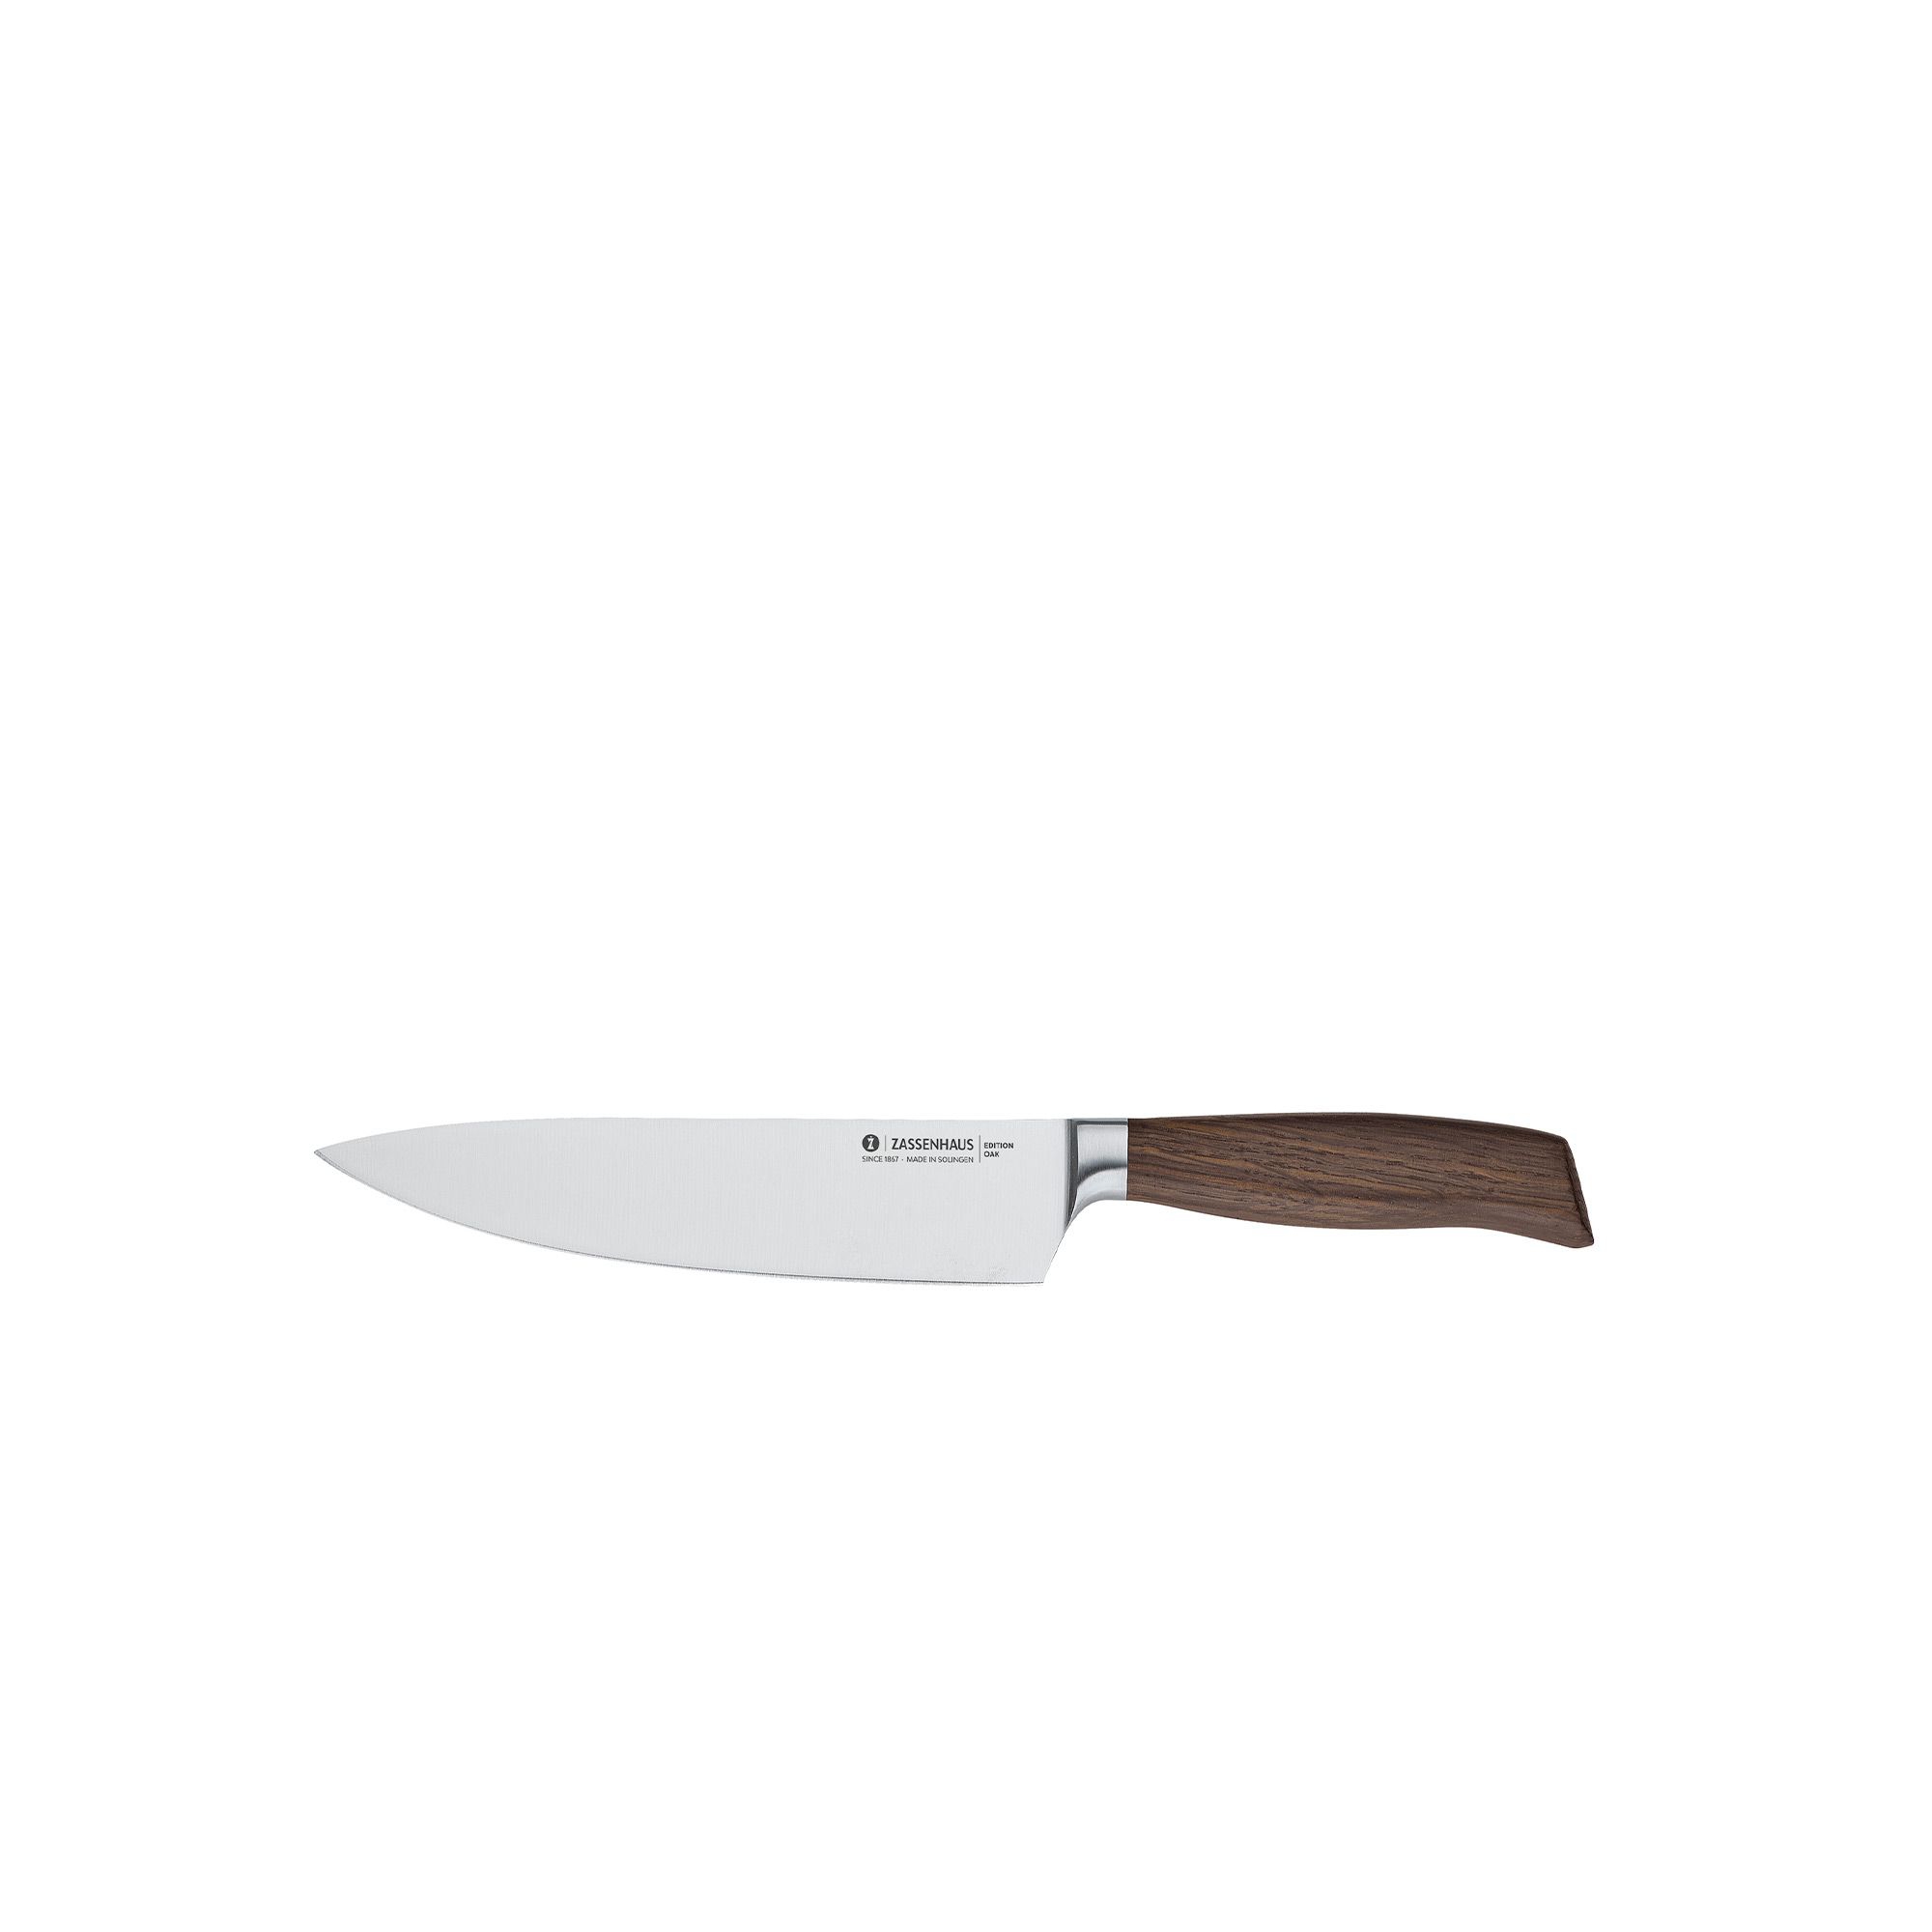 Zassenhaus - cooking knife 21cm  - EDITION OAK